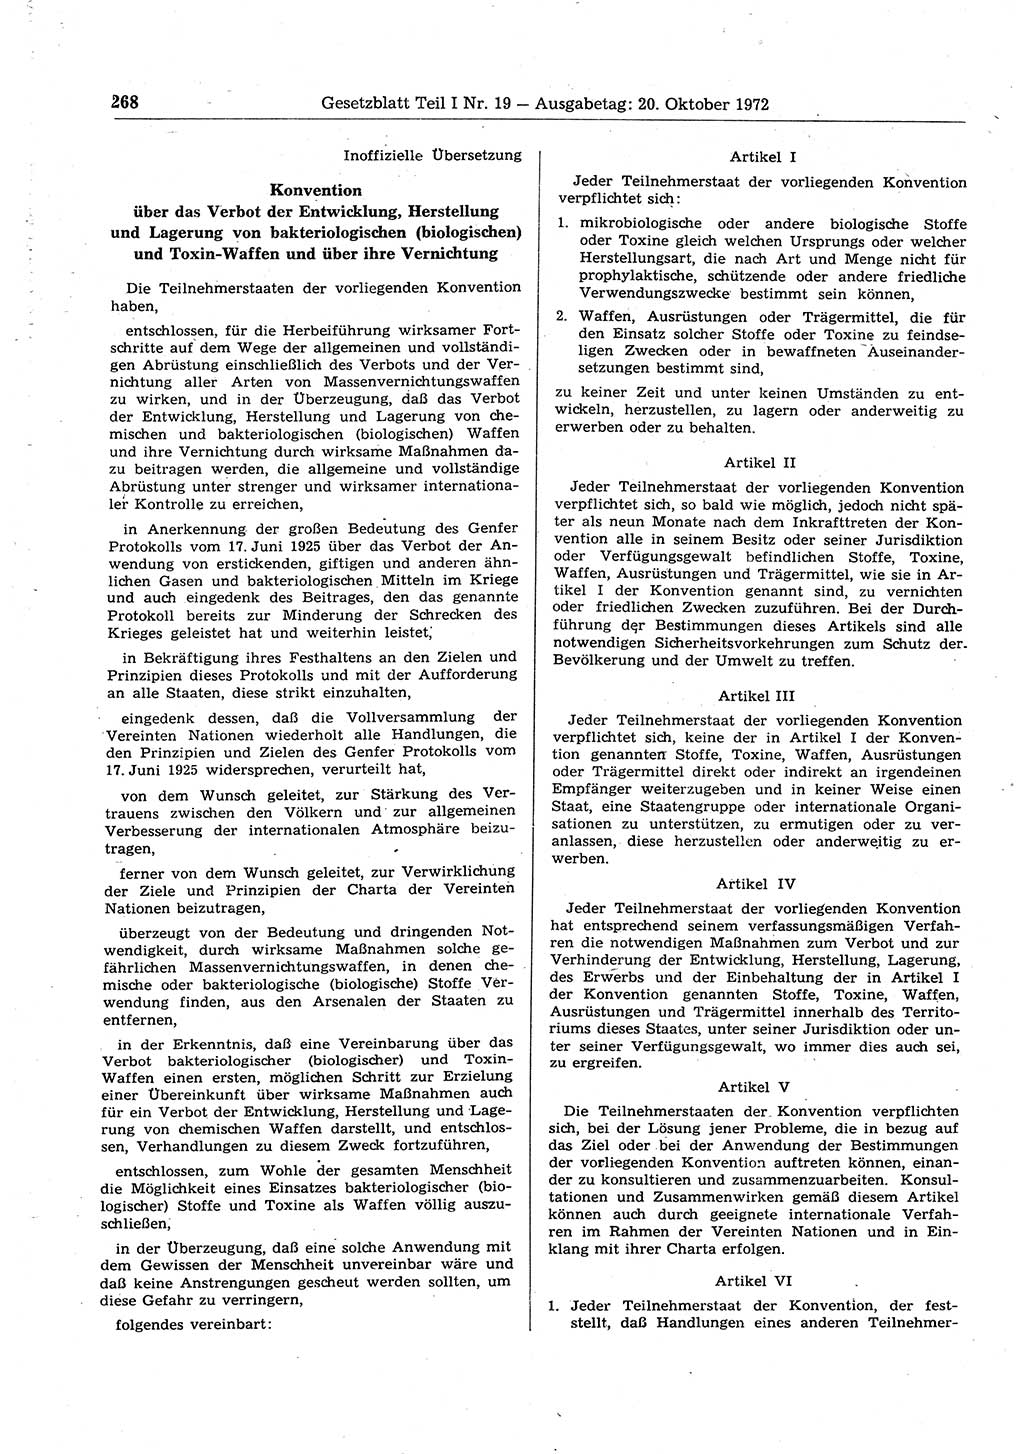 Gesetzblatt (GBl.) der Deutschen Demokratischen Republik (DDR) Teil Ⅰ 1972, Seite 268 (GBl. DDR Ⅰ 1972, S. 268)